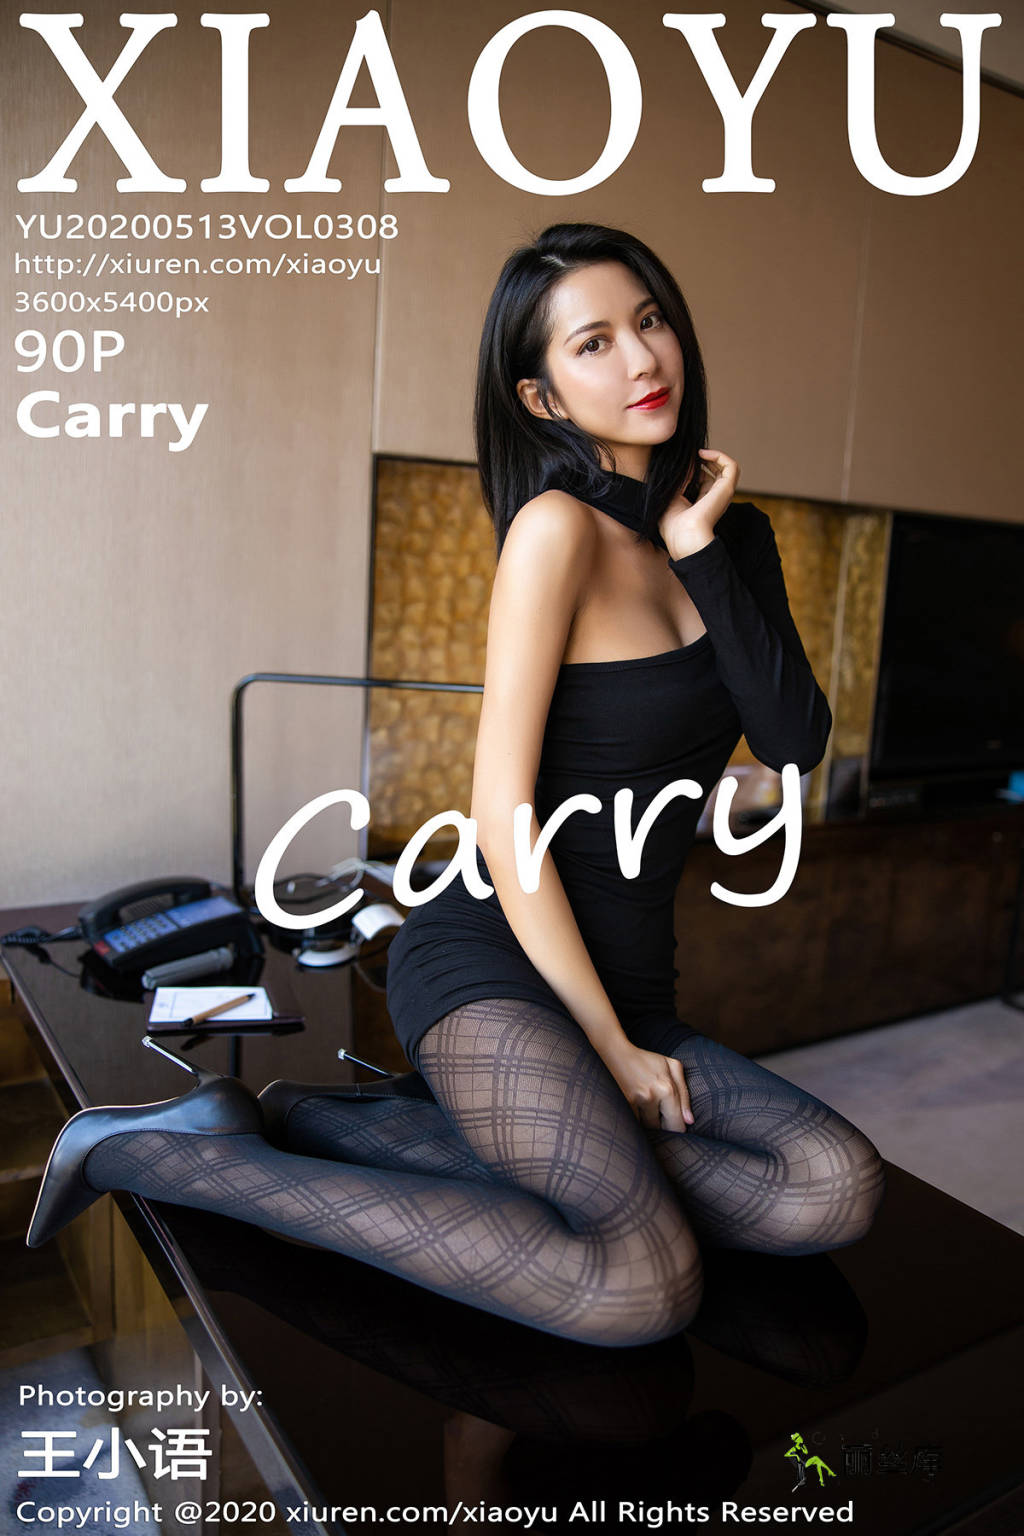 语画界XiaoYu 2020.05.13  No.308 Carry_丽丝库